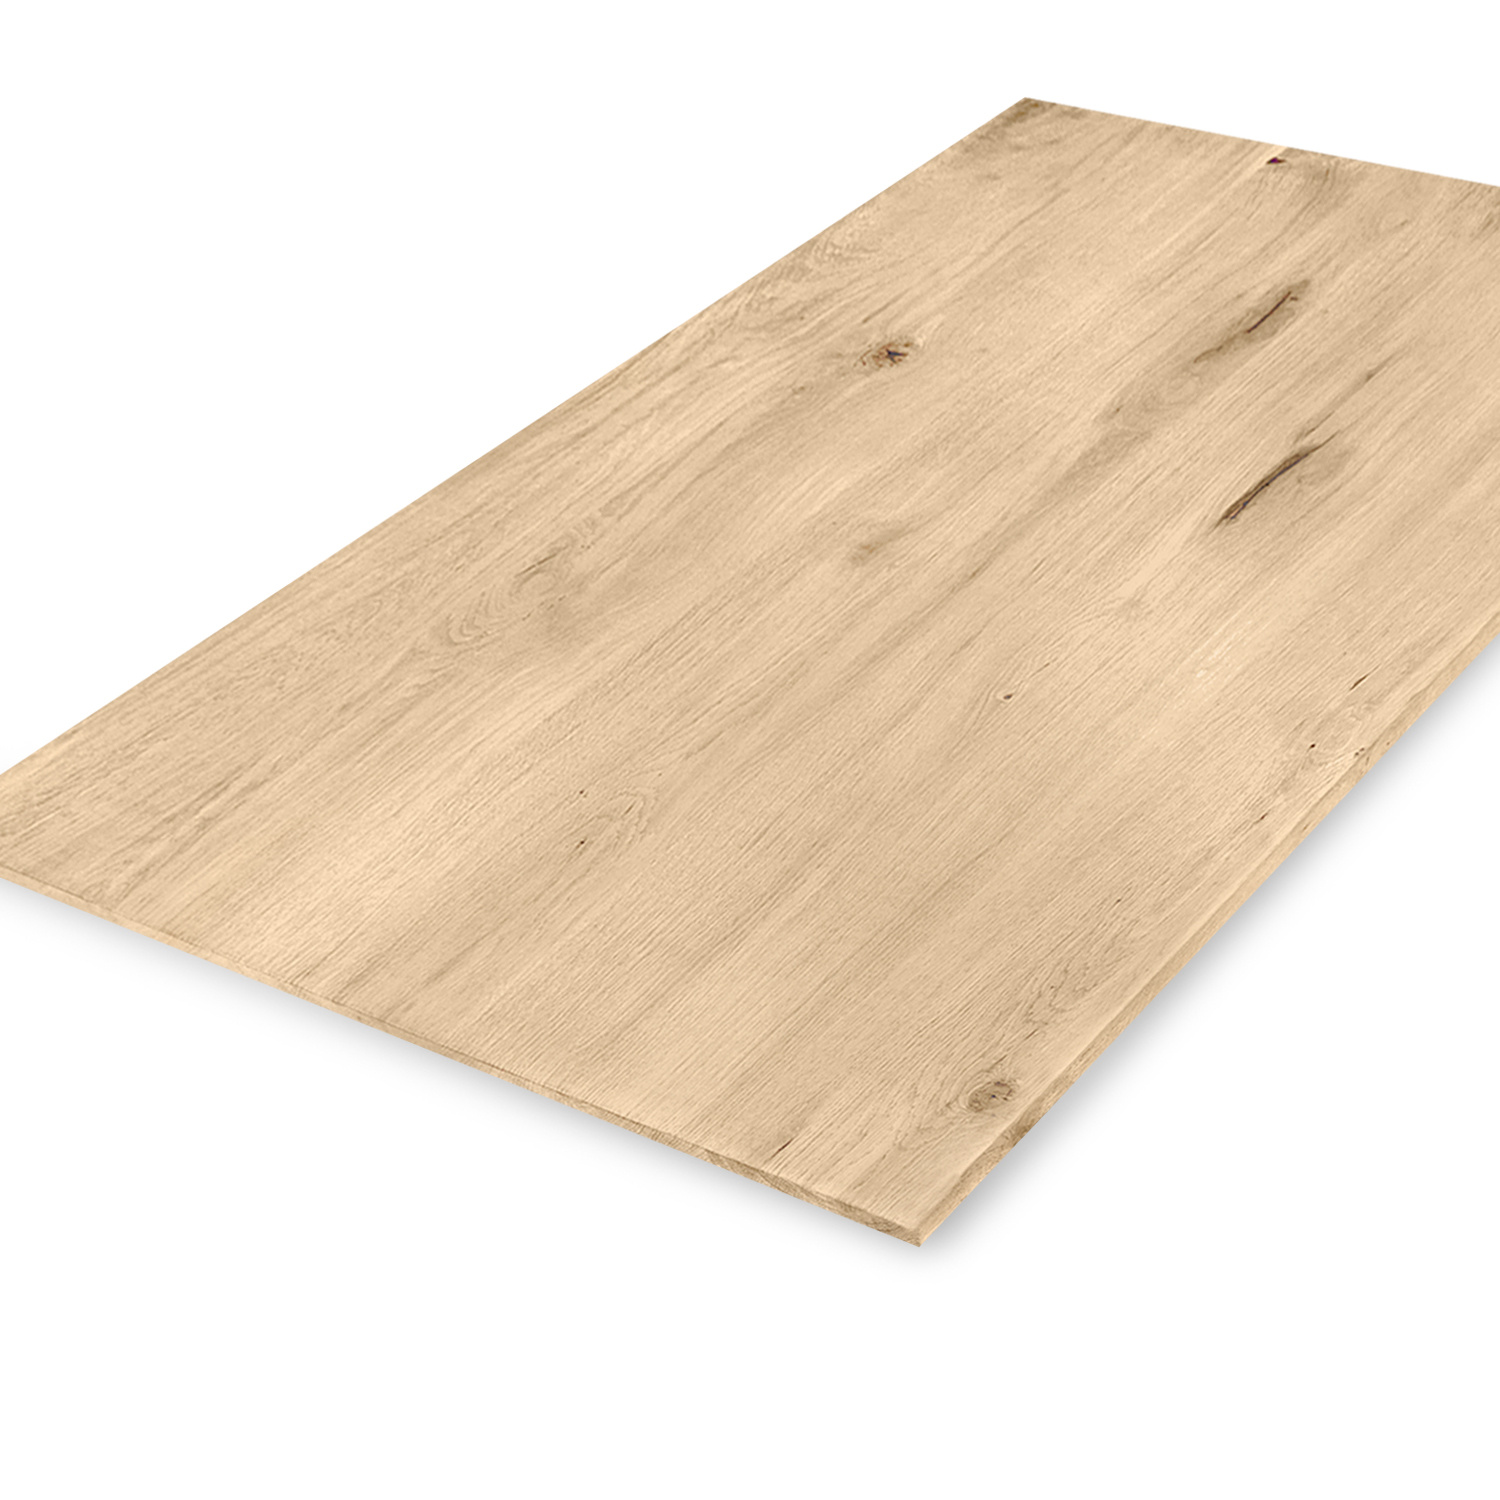  Tischplatte Wildeiche - Schweizer Kante - nach Maß - 4 cm dick (1-Schicht) - XXL Lamellen (14-20 cm breit) - Asteiche (rustikal) - verleimt & künstlich getrocknet (HF 8-12%) - 40-117x80-247 cm